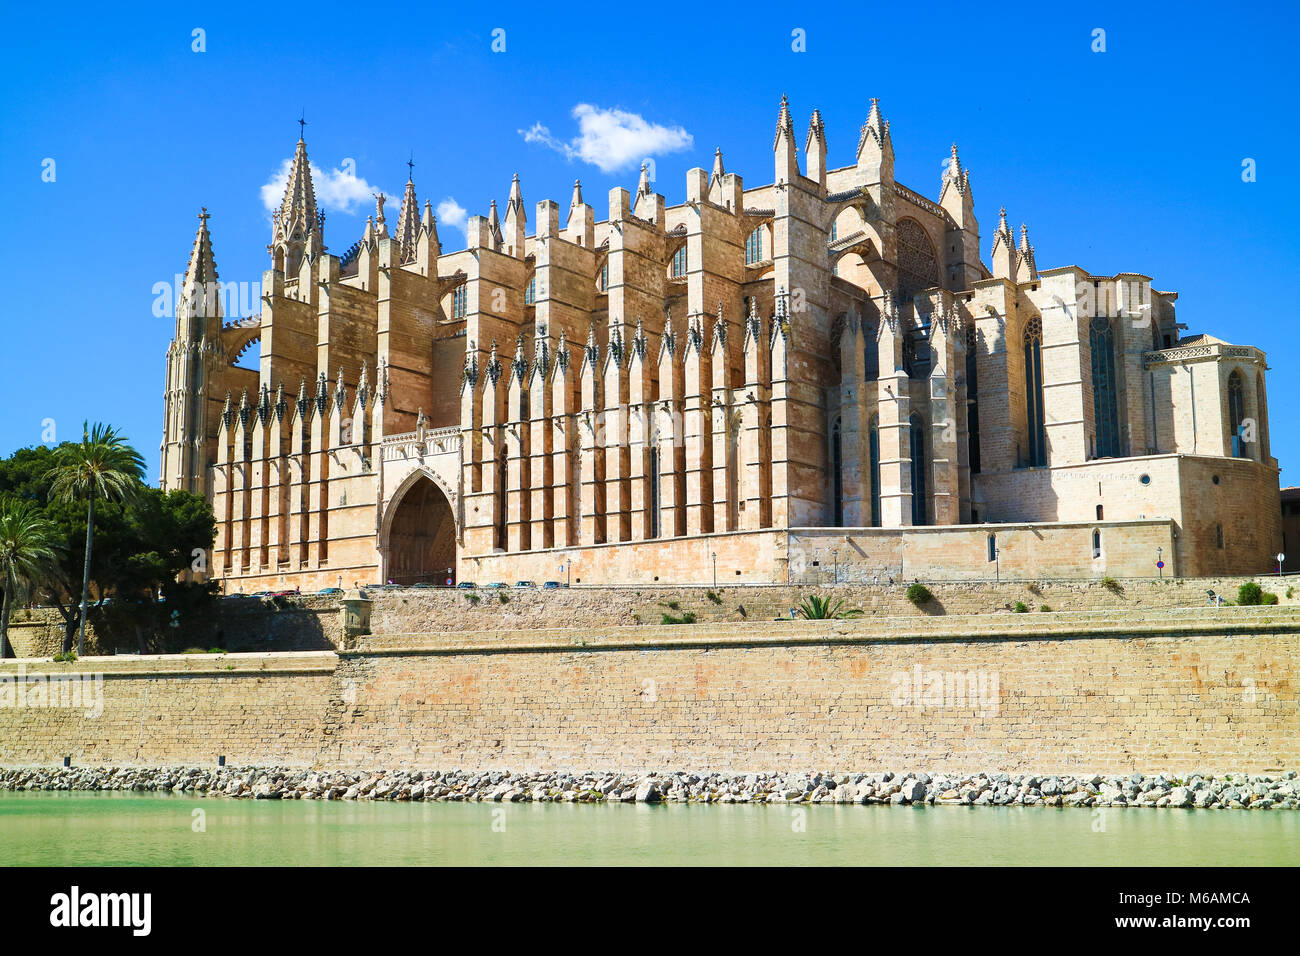 La Seu - Die berühmten mittelalterlichen gotischen Kathedrale in der Hauptstadt der Insel. Palma de Mallorca, Spanien. Stockfoto